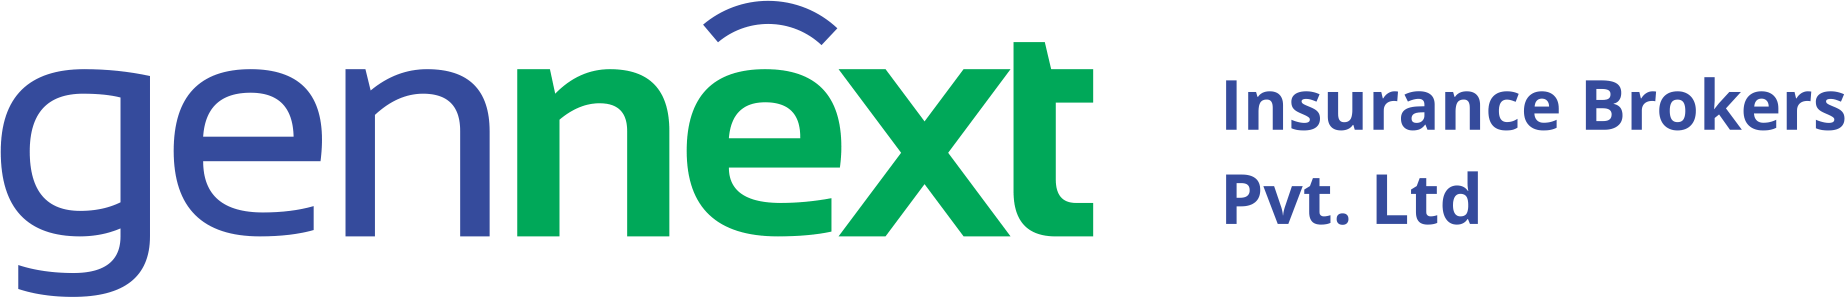 GennextInsurance_logo